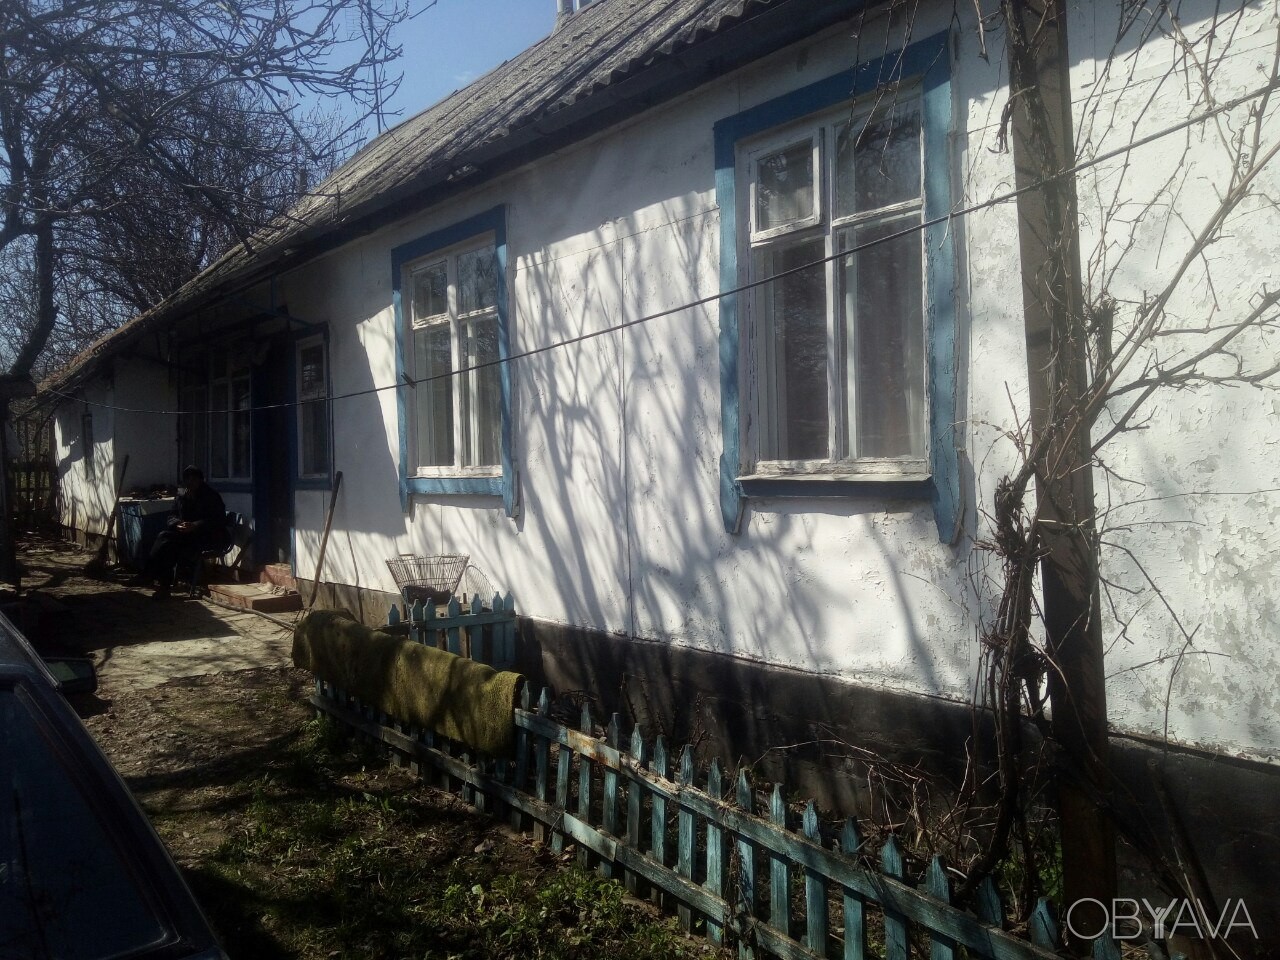 Prodazha Dom V Barvenkovo Obyavleniya I Ceny Waa2